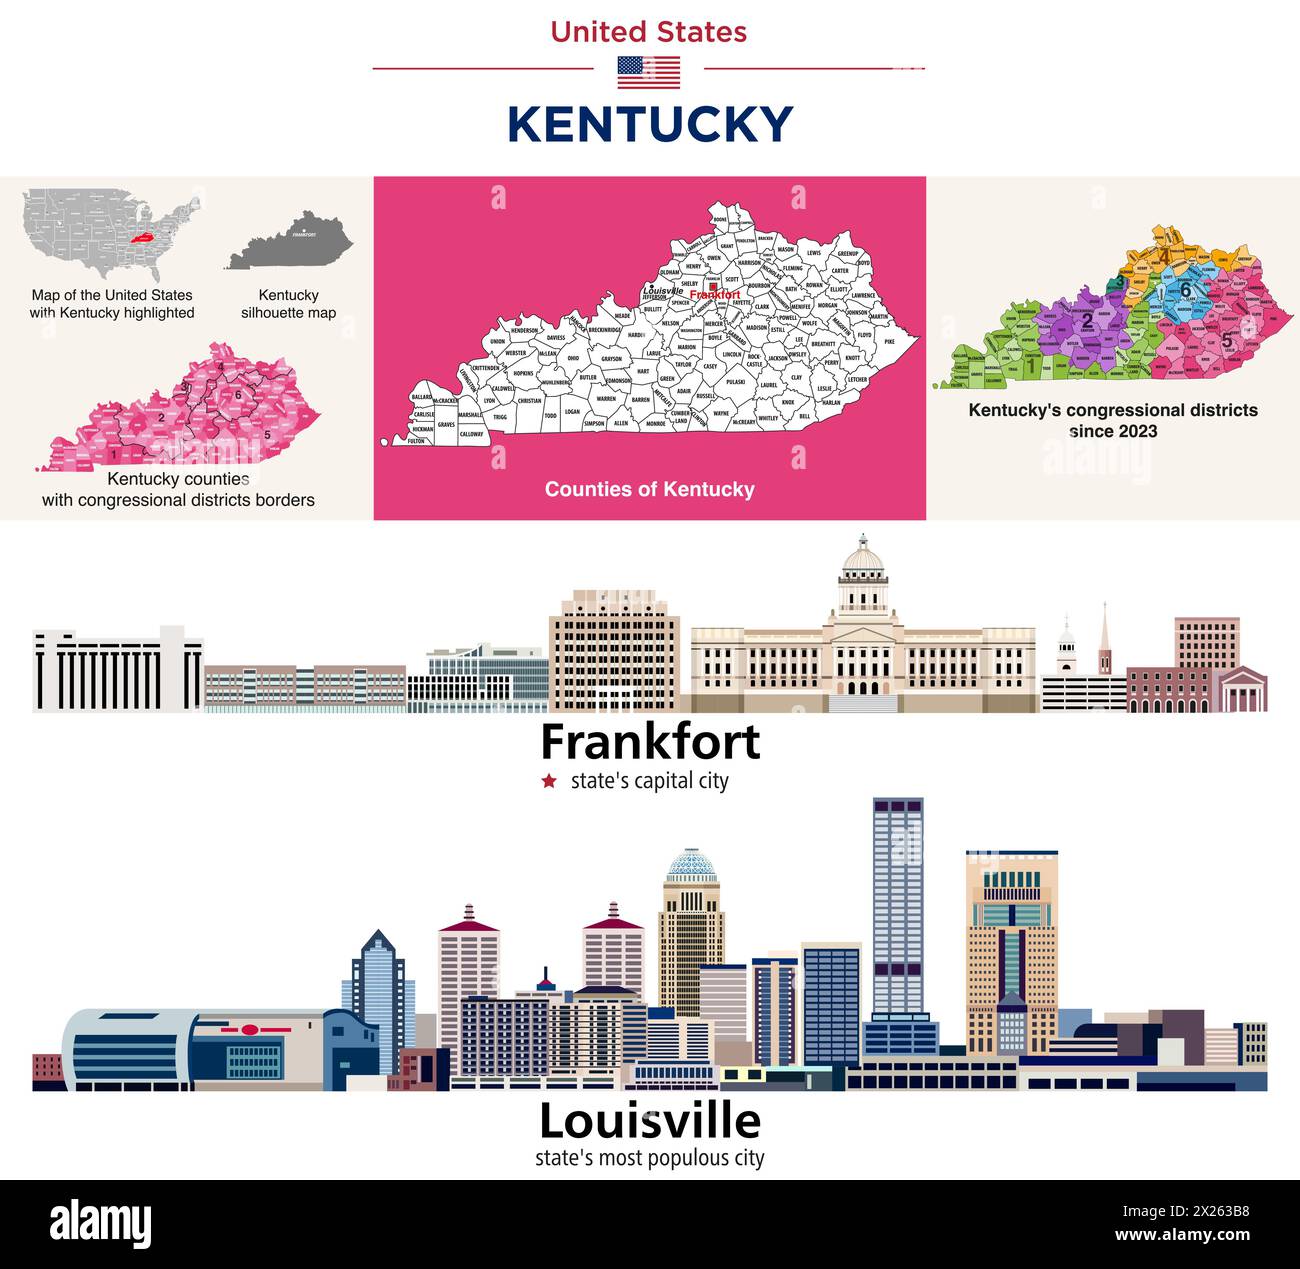 Mappa delle contee del Kentucky e dei distretti congressuali dal 2023. Frankfort (la capitale dello stato) e Louisville (la città più popolosa dello stato) Illustrazione Vettoriale